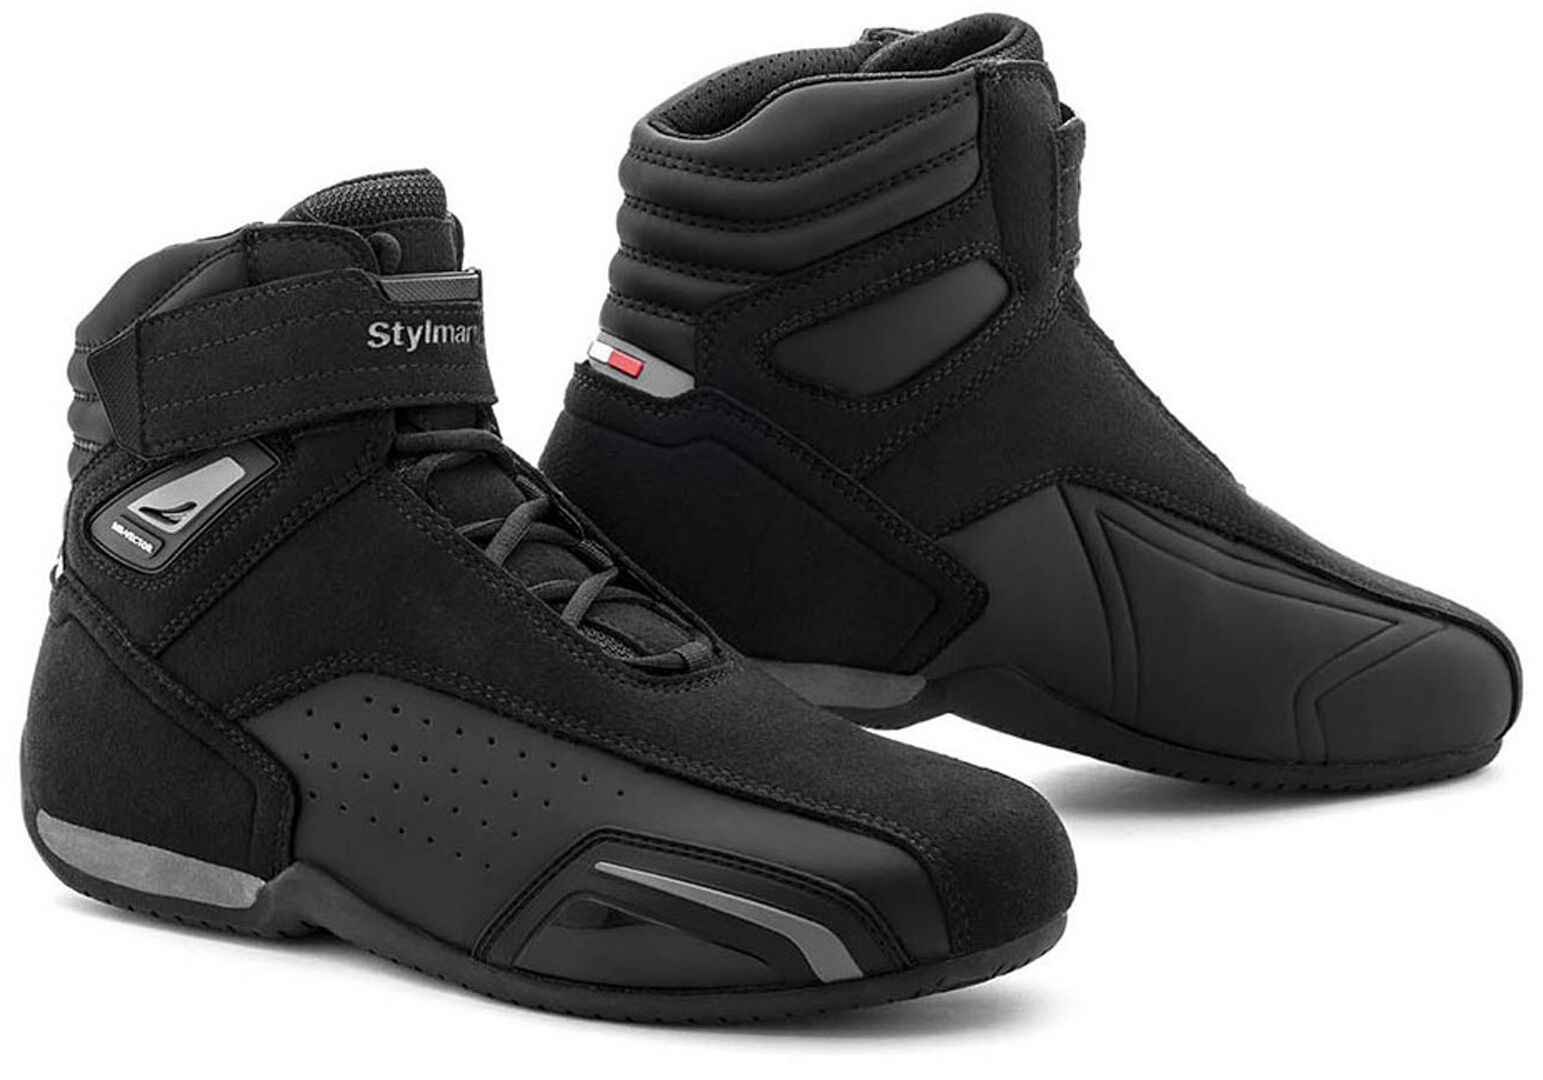 Stylmartin Vector Air Zapatos de moto - Negro (46)